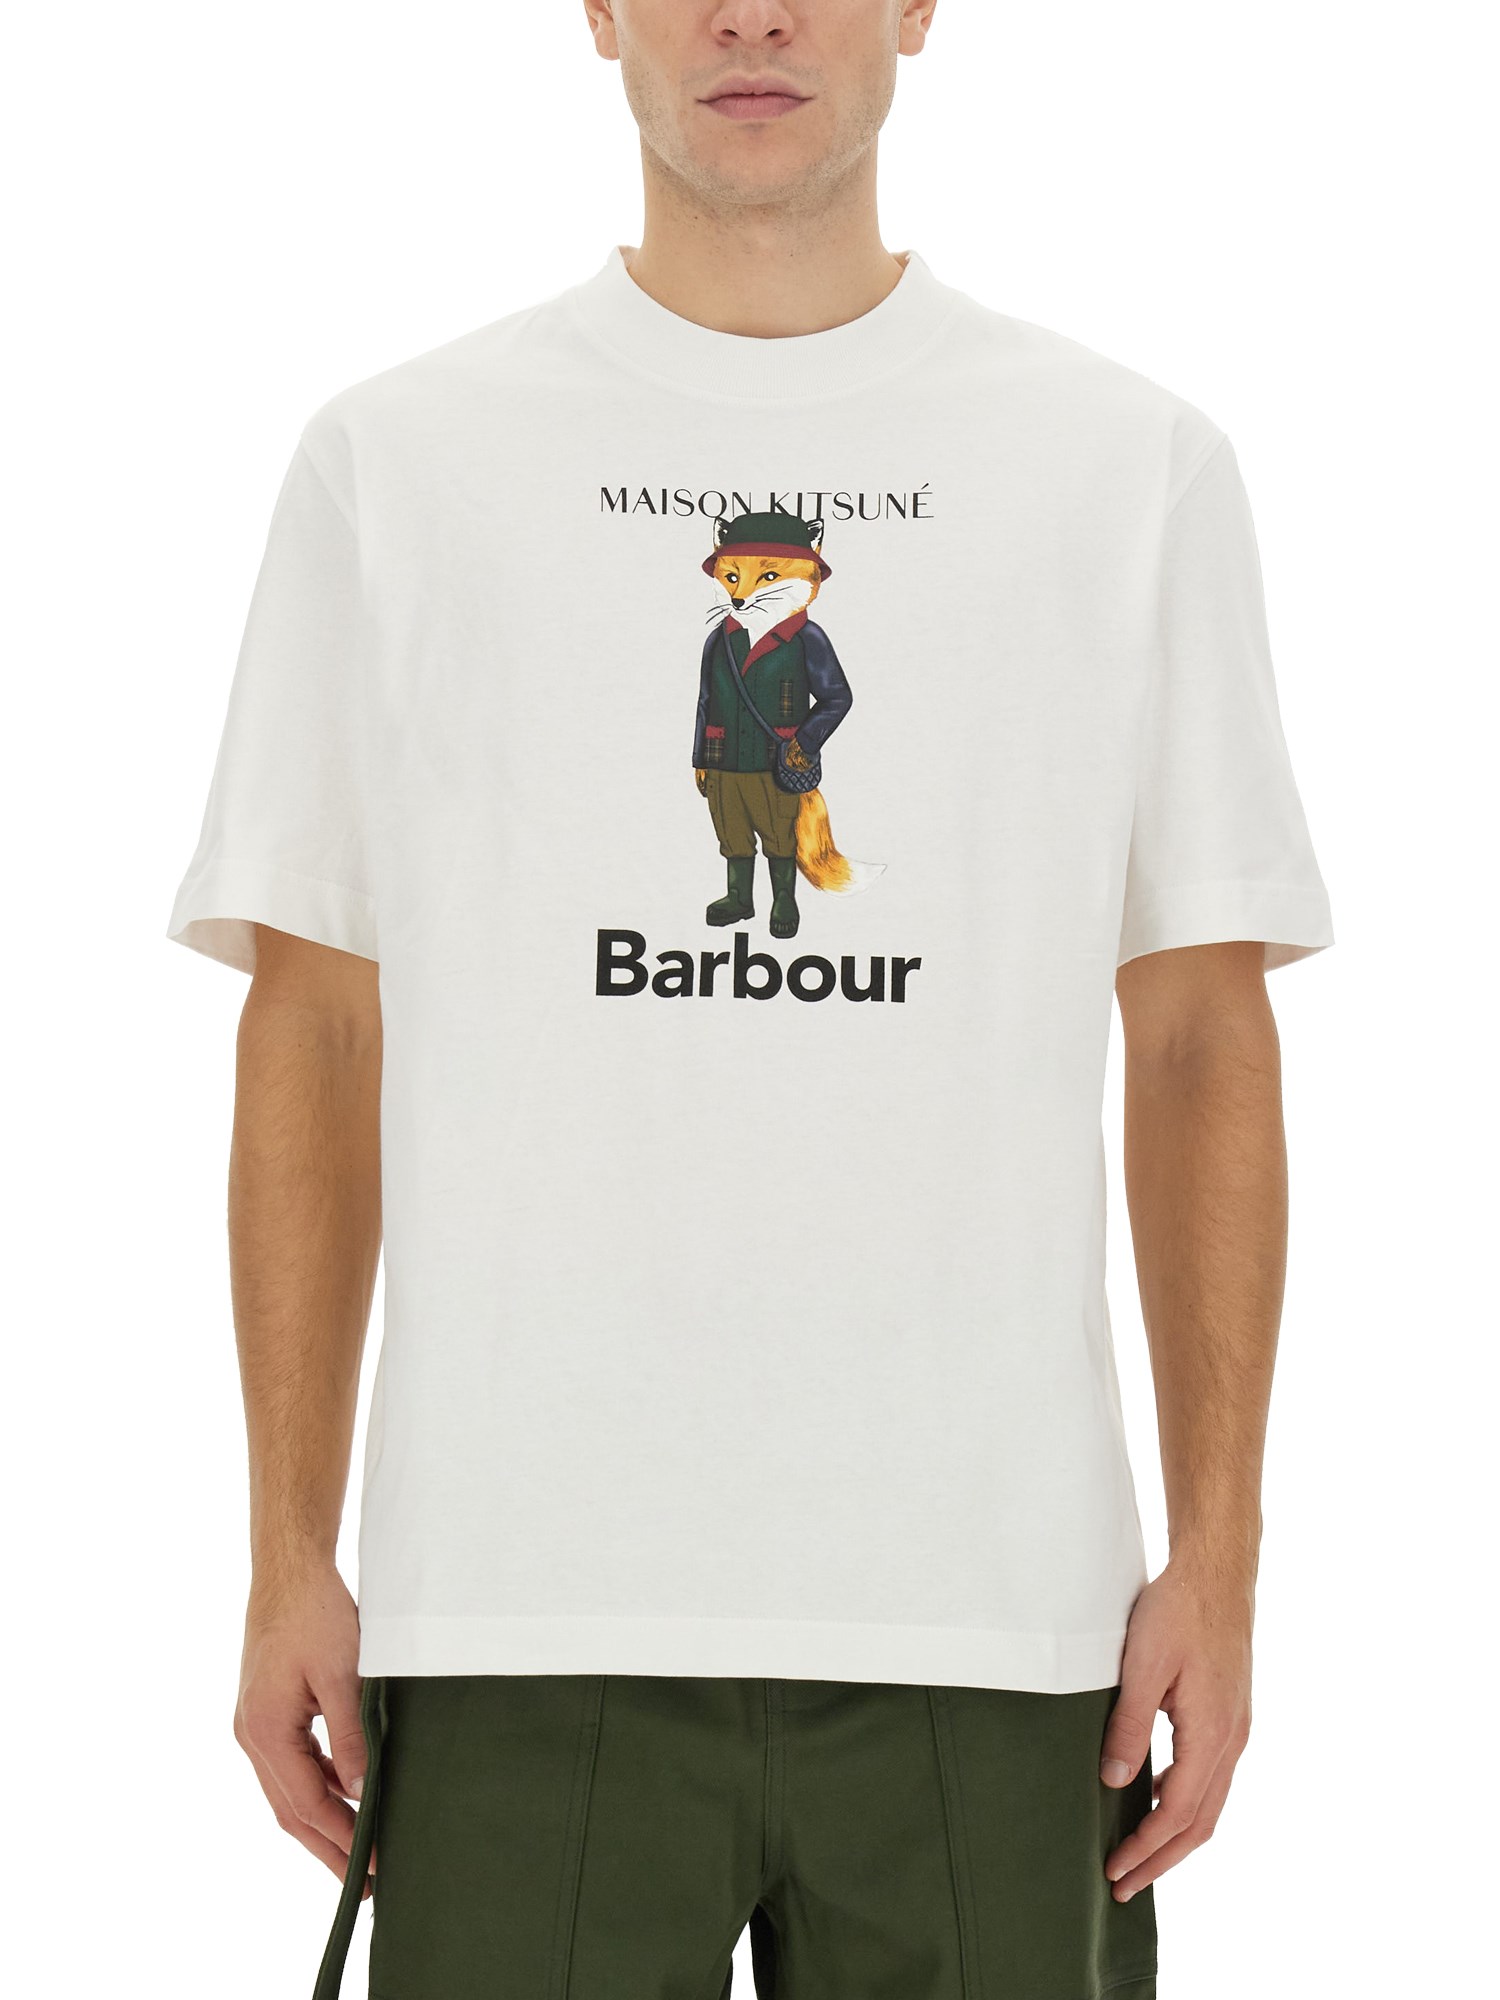 maison kitsuné x barbour beaufort fox print t-shirt